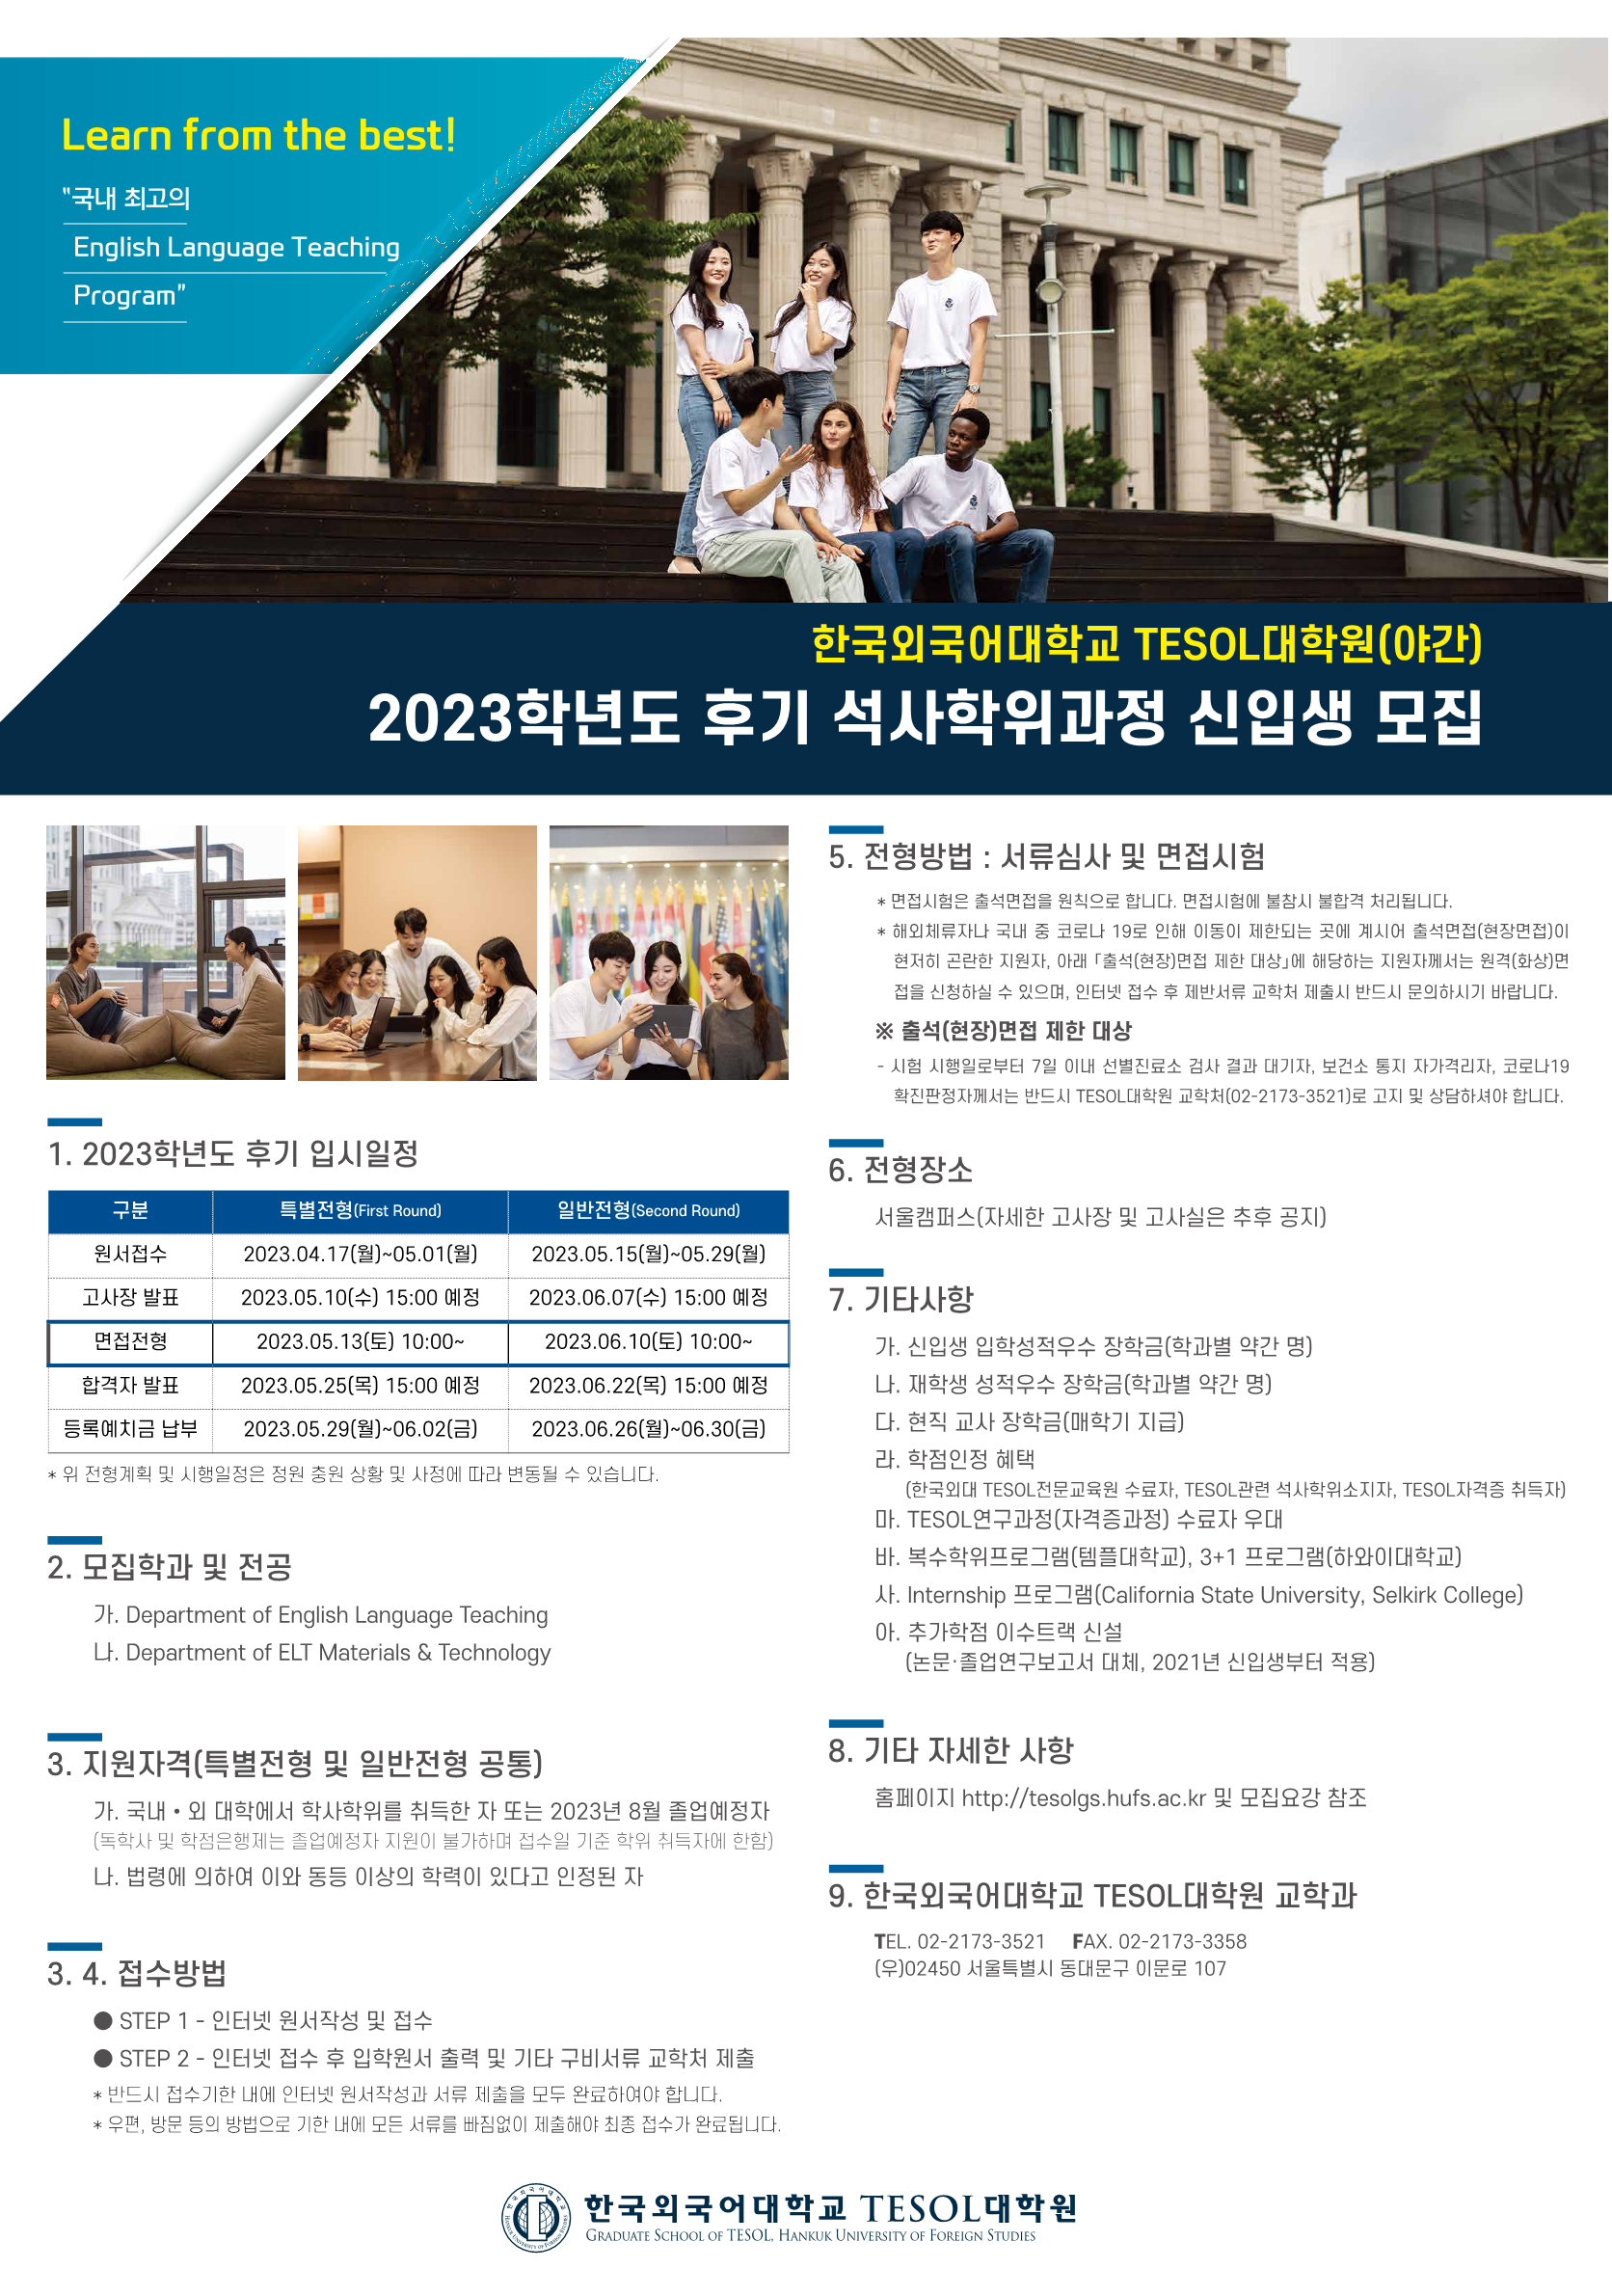 2023 후기 TESOL대학원 신입생 모집 포스터_1.png